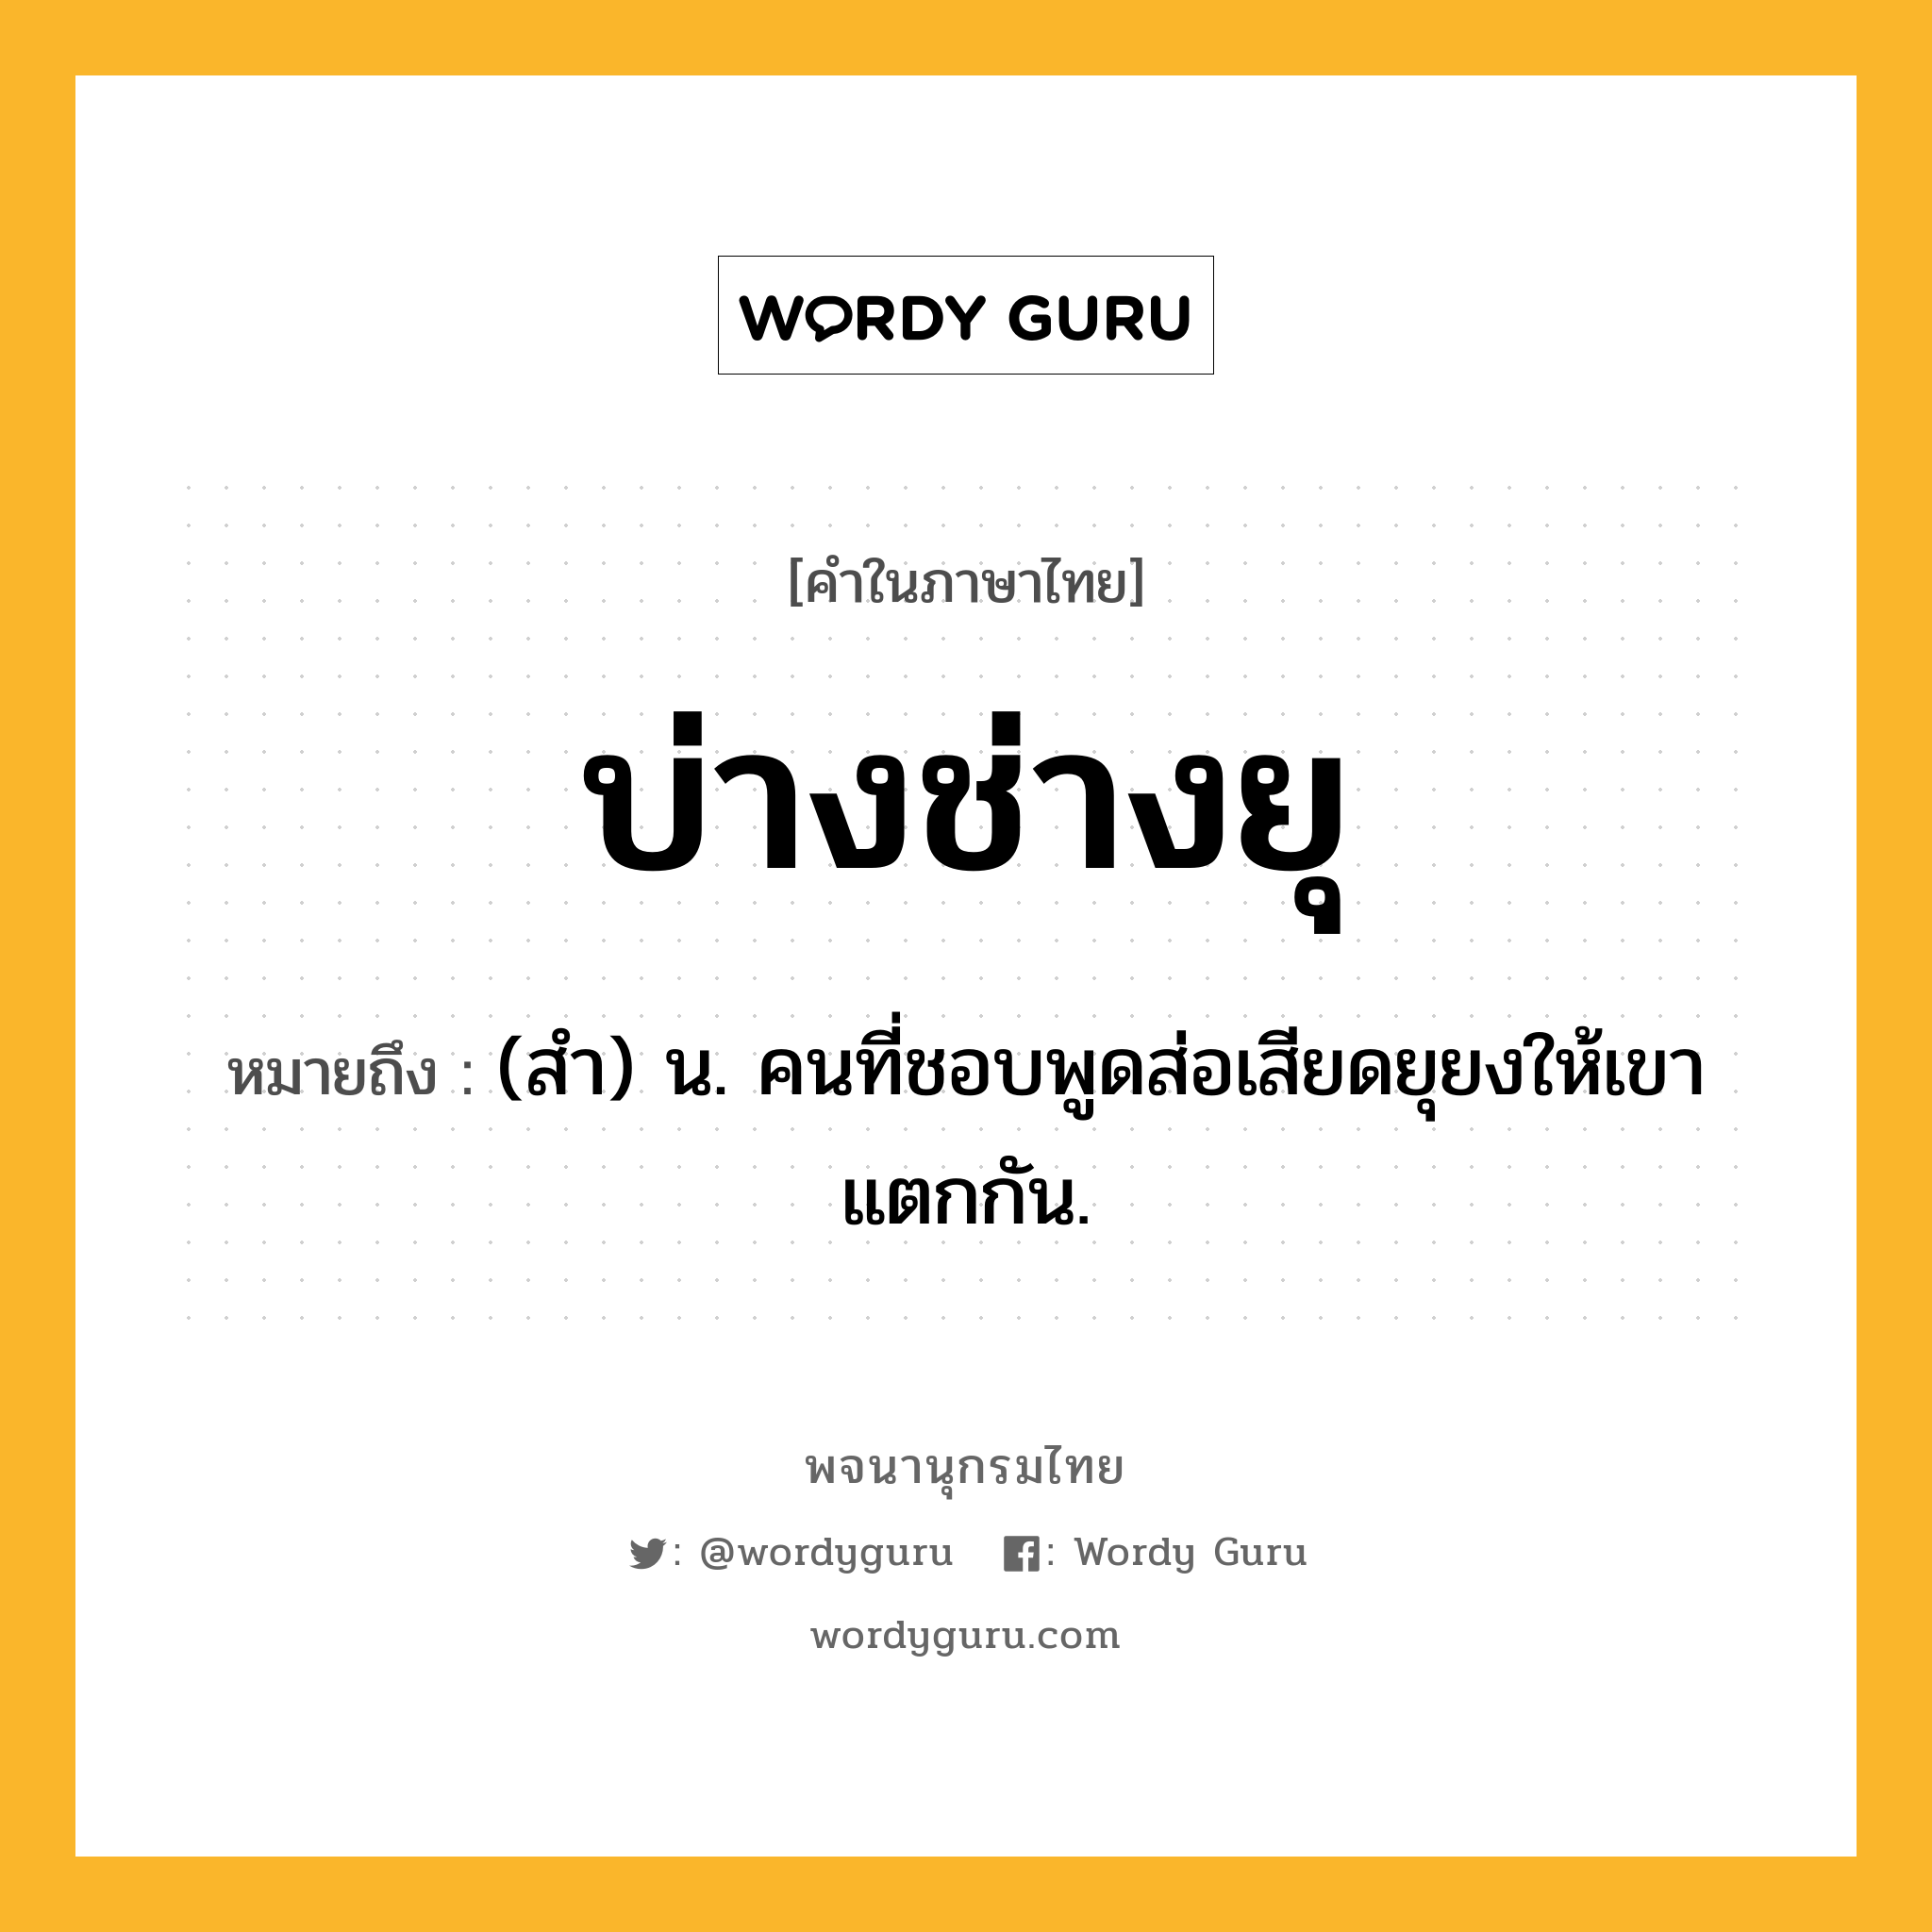 บ่างช่างยุ ความหมาย หมายถึงอะไร?, คำในภาษาไทย บ่างช่างยุ หมายถึง (สํา) น. คนที่ชอบพูดส่อเสียดยุยงให้เขาแตกกัน.